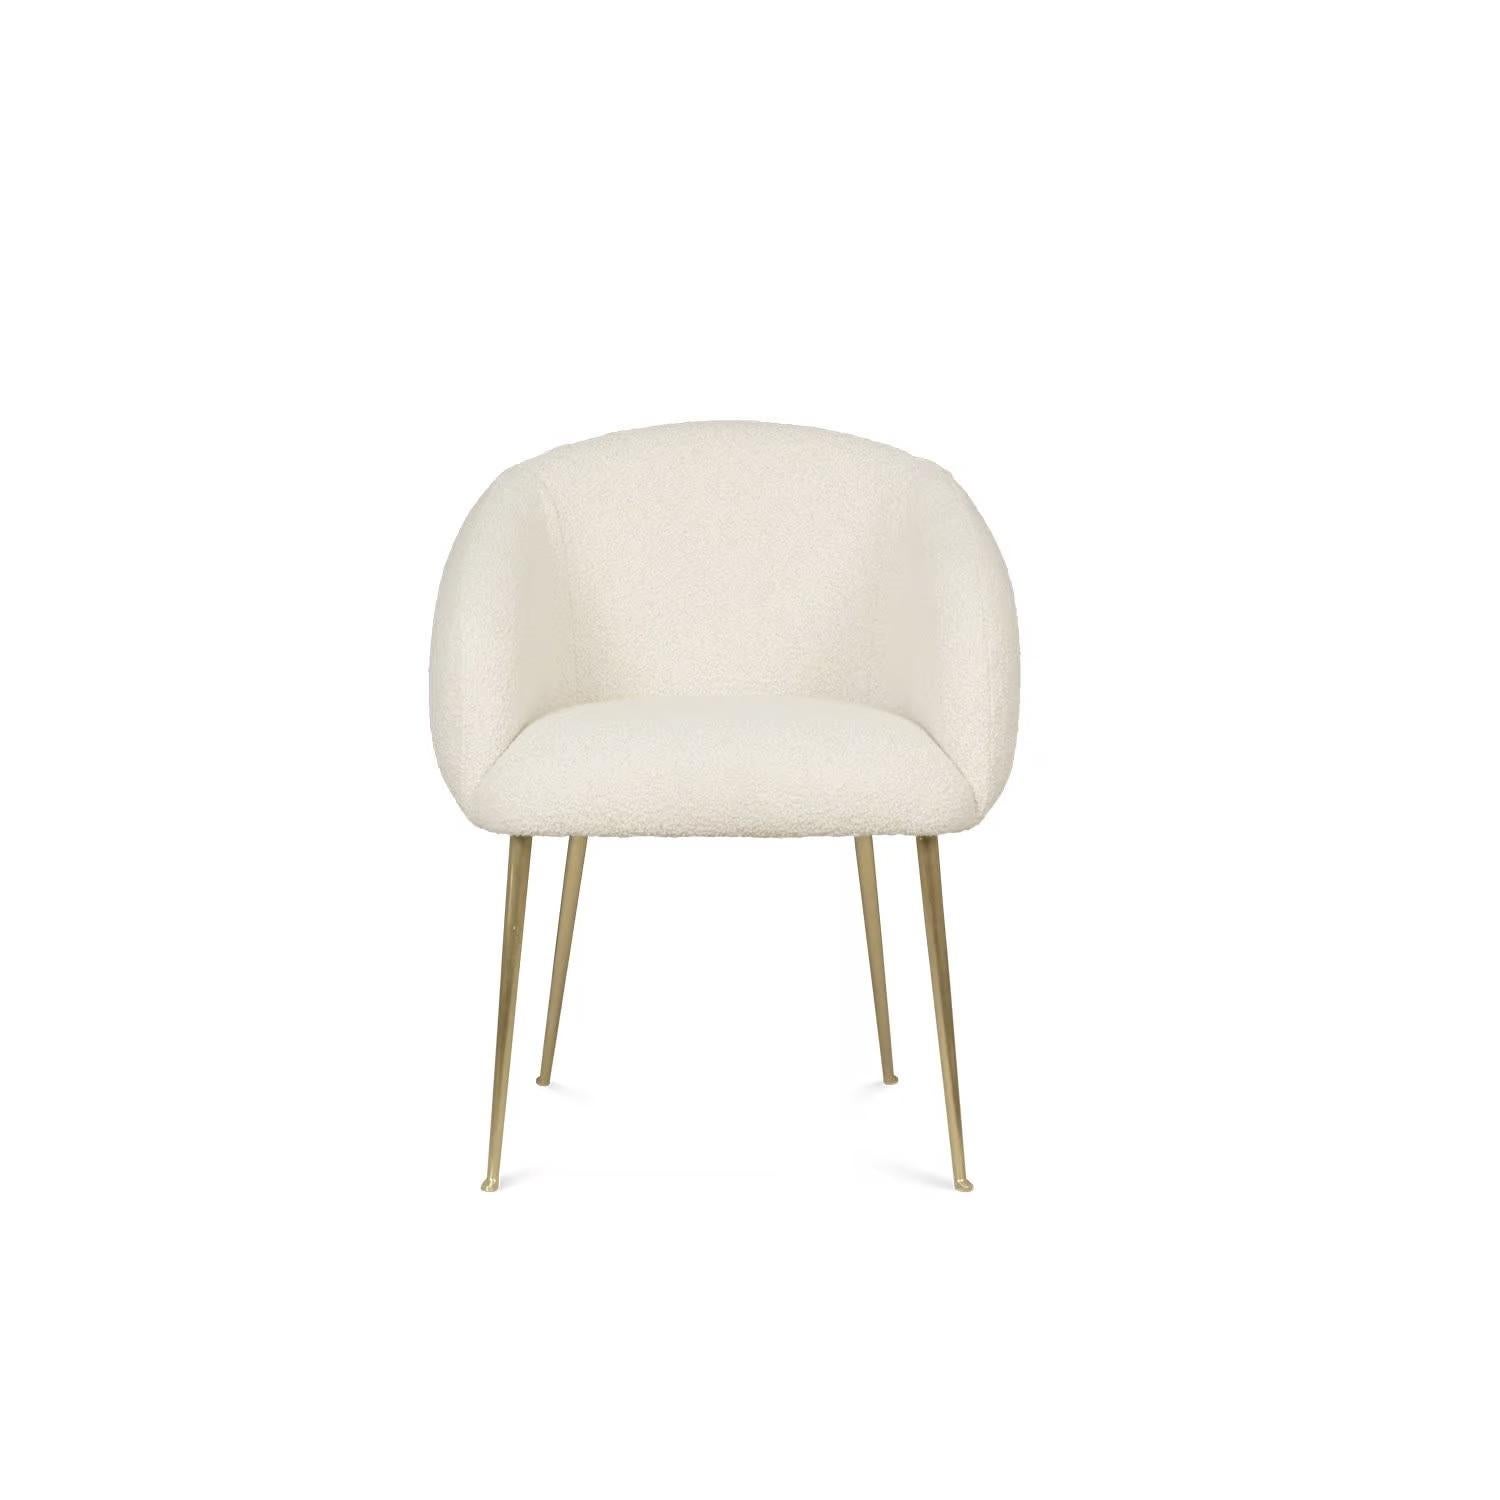 Dieser Sessel ist mit einem Boucle-Stoff bezogen, der sowohl Komfort als auch Stil bietet. Die robusten Messingbeine verleihen dem Gesamtdesign eine Kombination aus Stärke und Eleganz.
Abmessungen: Breite 24,4